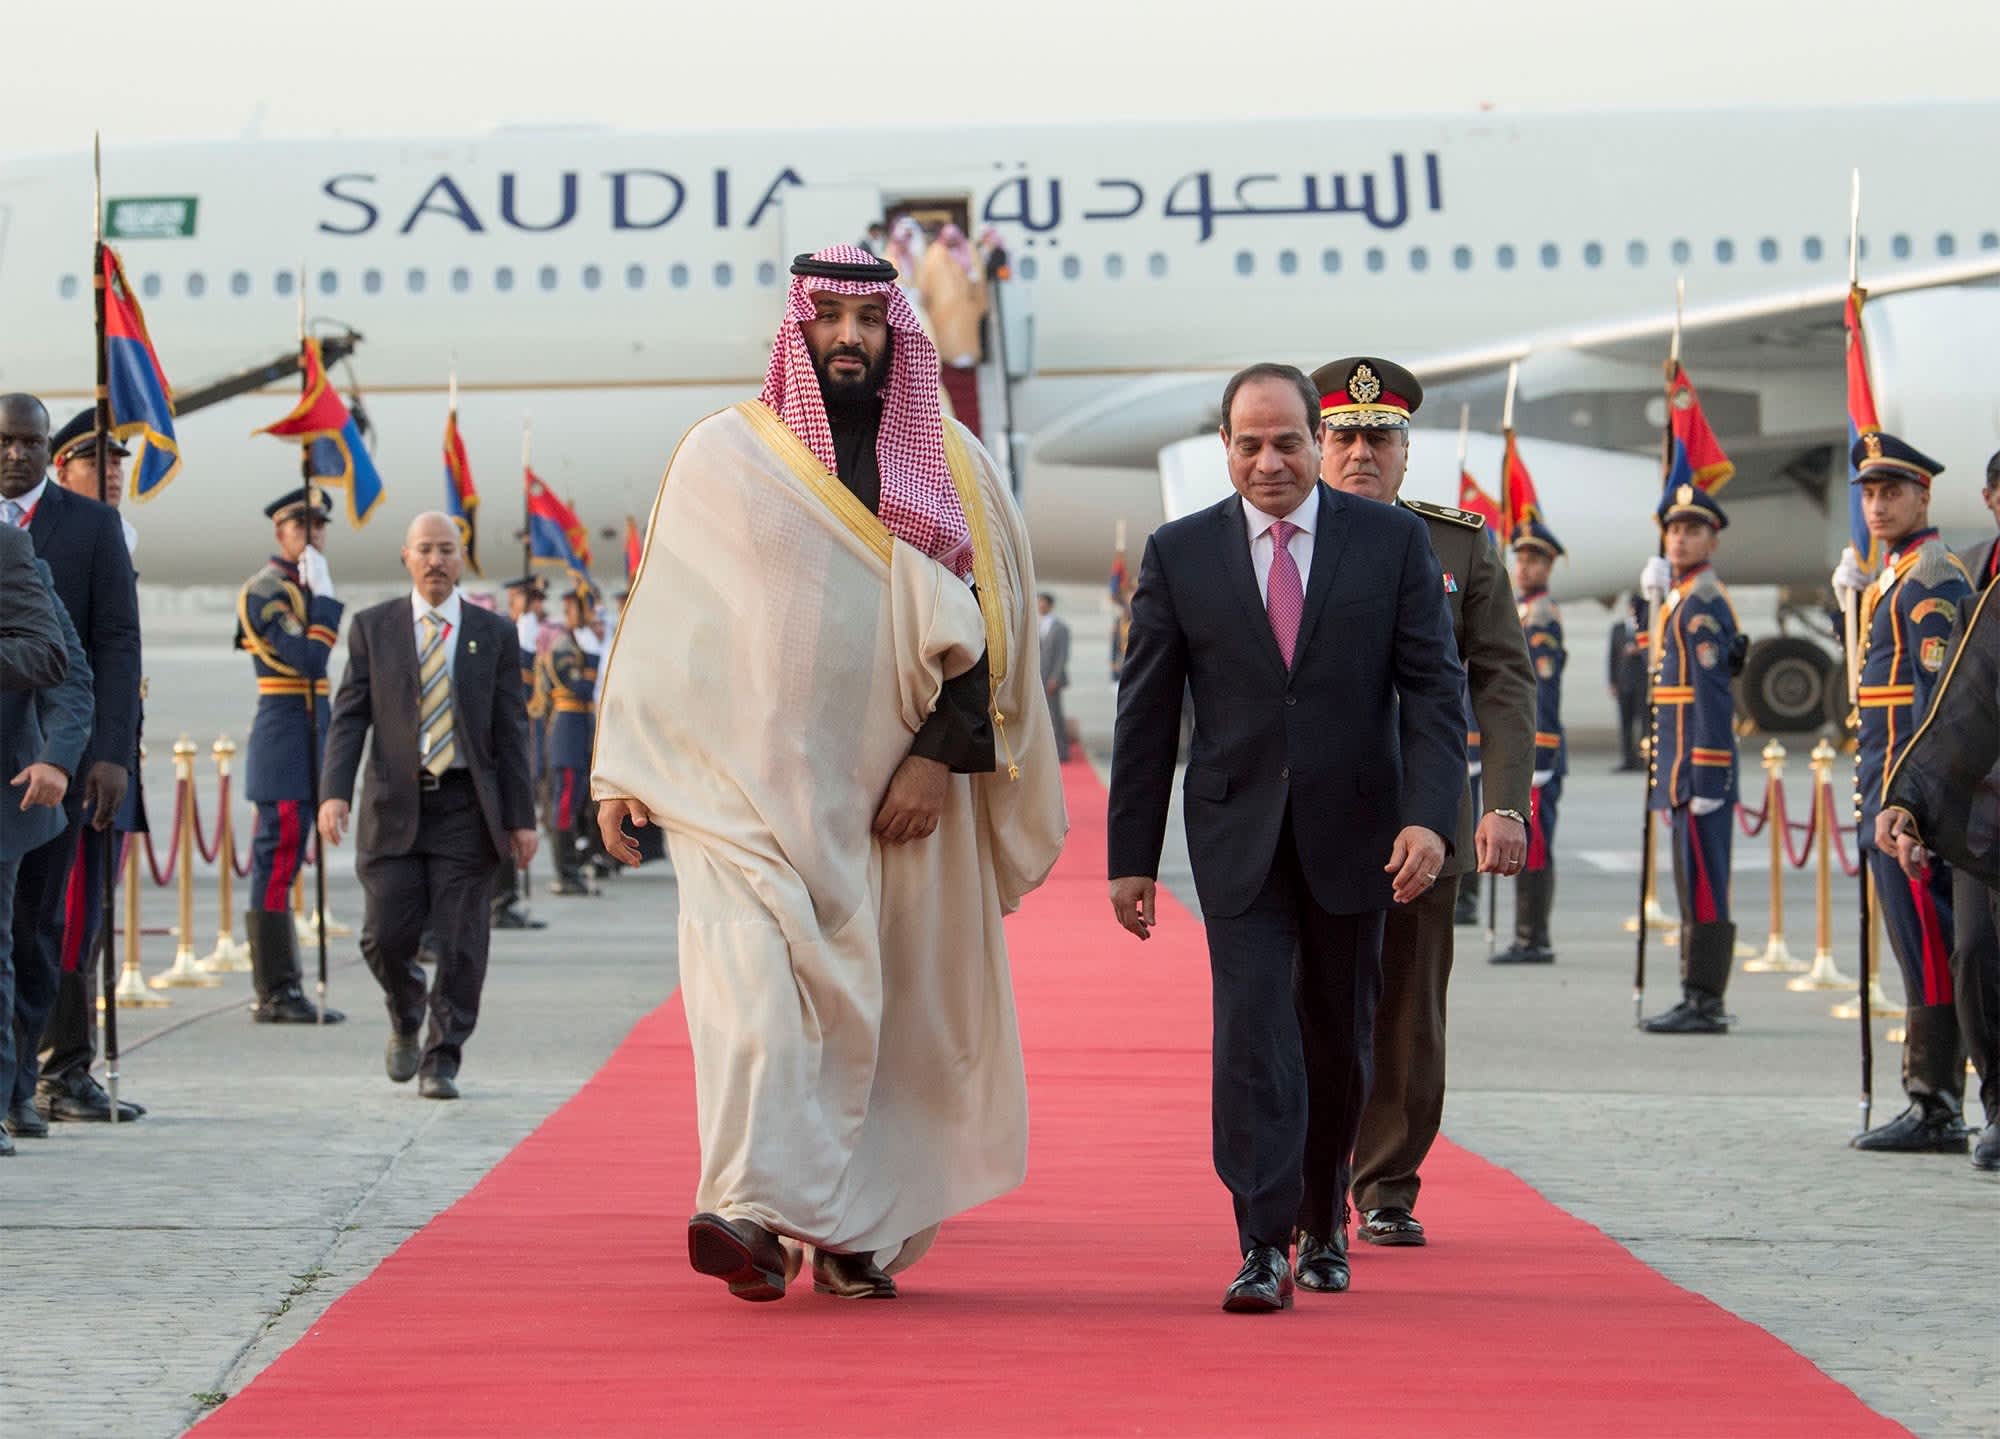 ÙØªÙØ¬Ø© Ø¨Ø­Ø« Ø§ÙØµÙØ± Ø¹Ù âªSisi + aircraft+ Prince Mohammed bin Salmanâ¬â